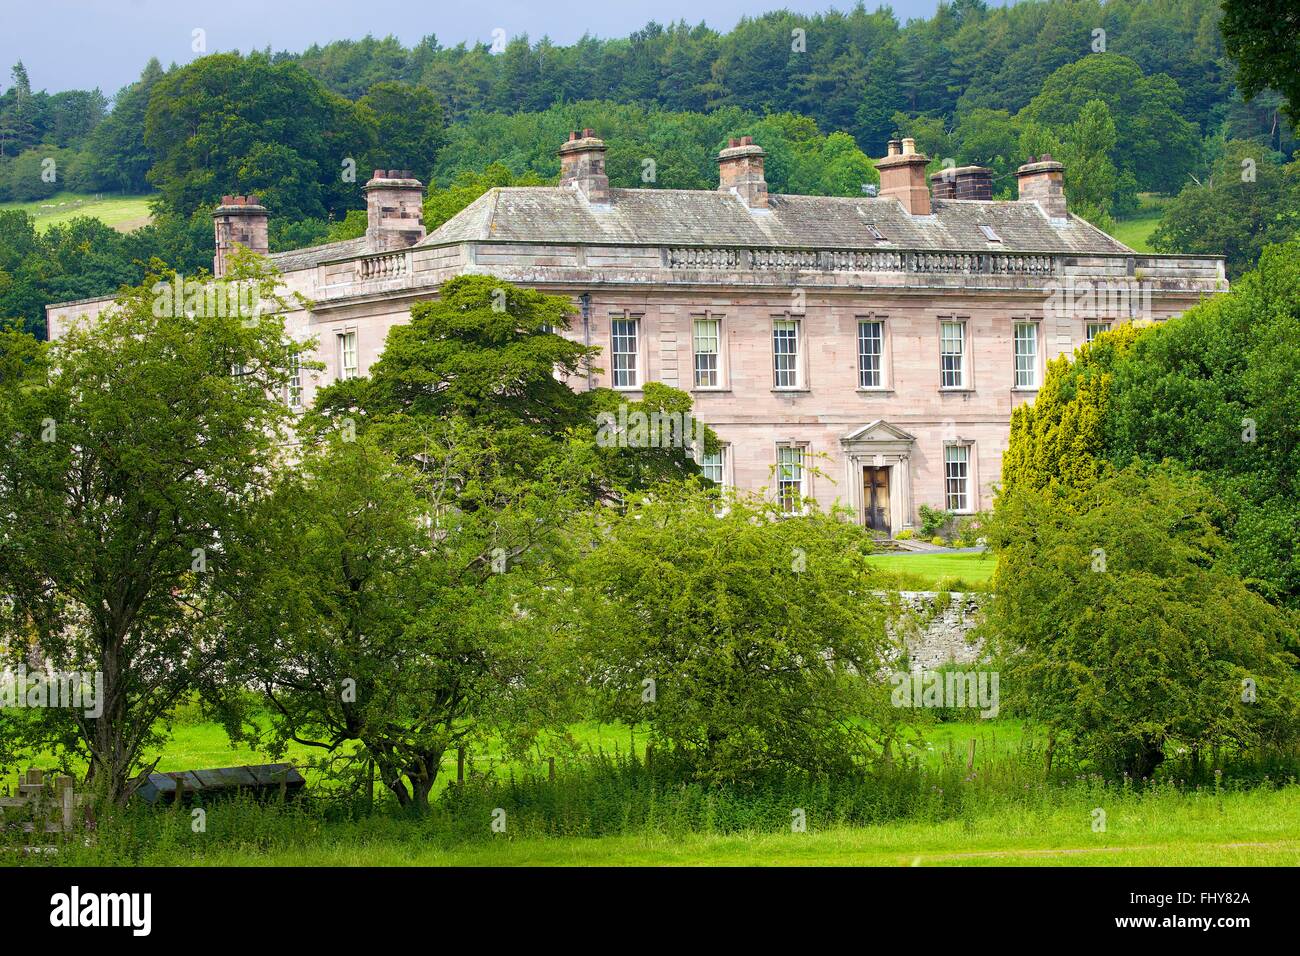 Dalemain Mansion & Jardins historiques. Parc National de Lake District, District d'Eden, Penrith, Cumbria, Angleterre, Royaume-Uni, UK. Banque D'Images